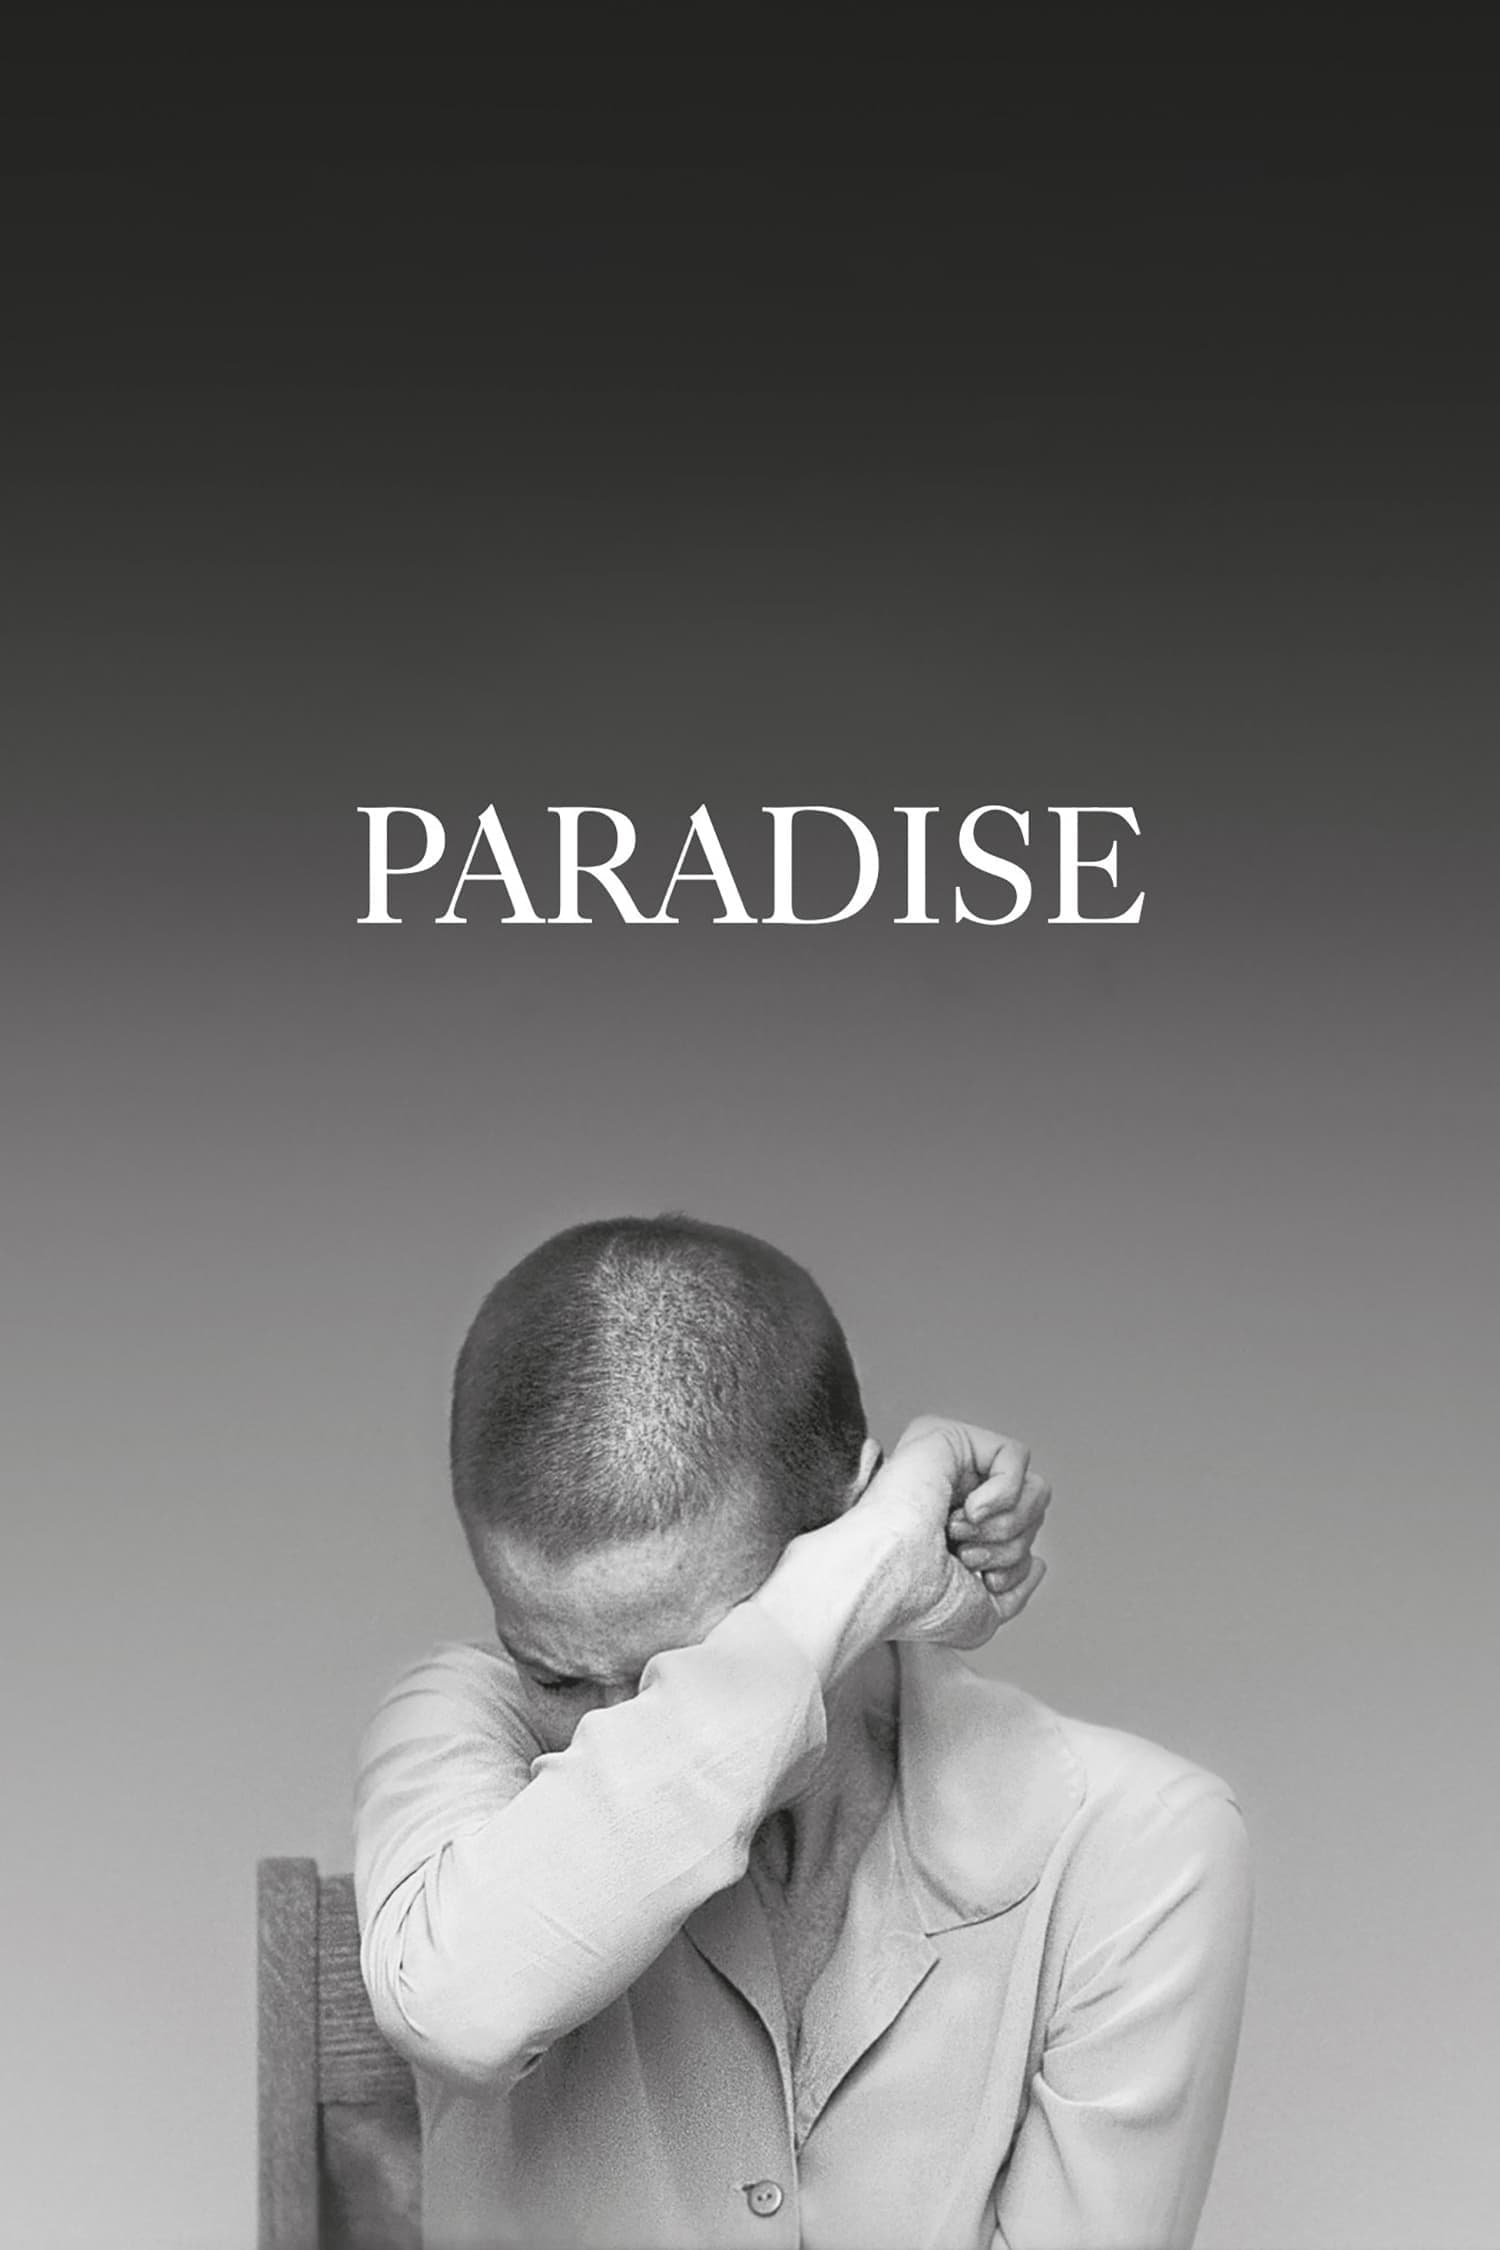 Paradis (2016)